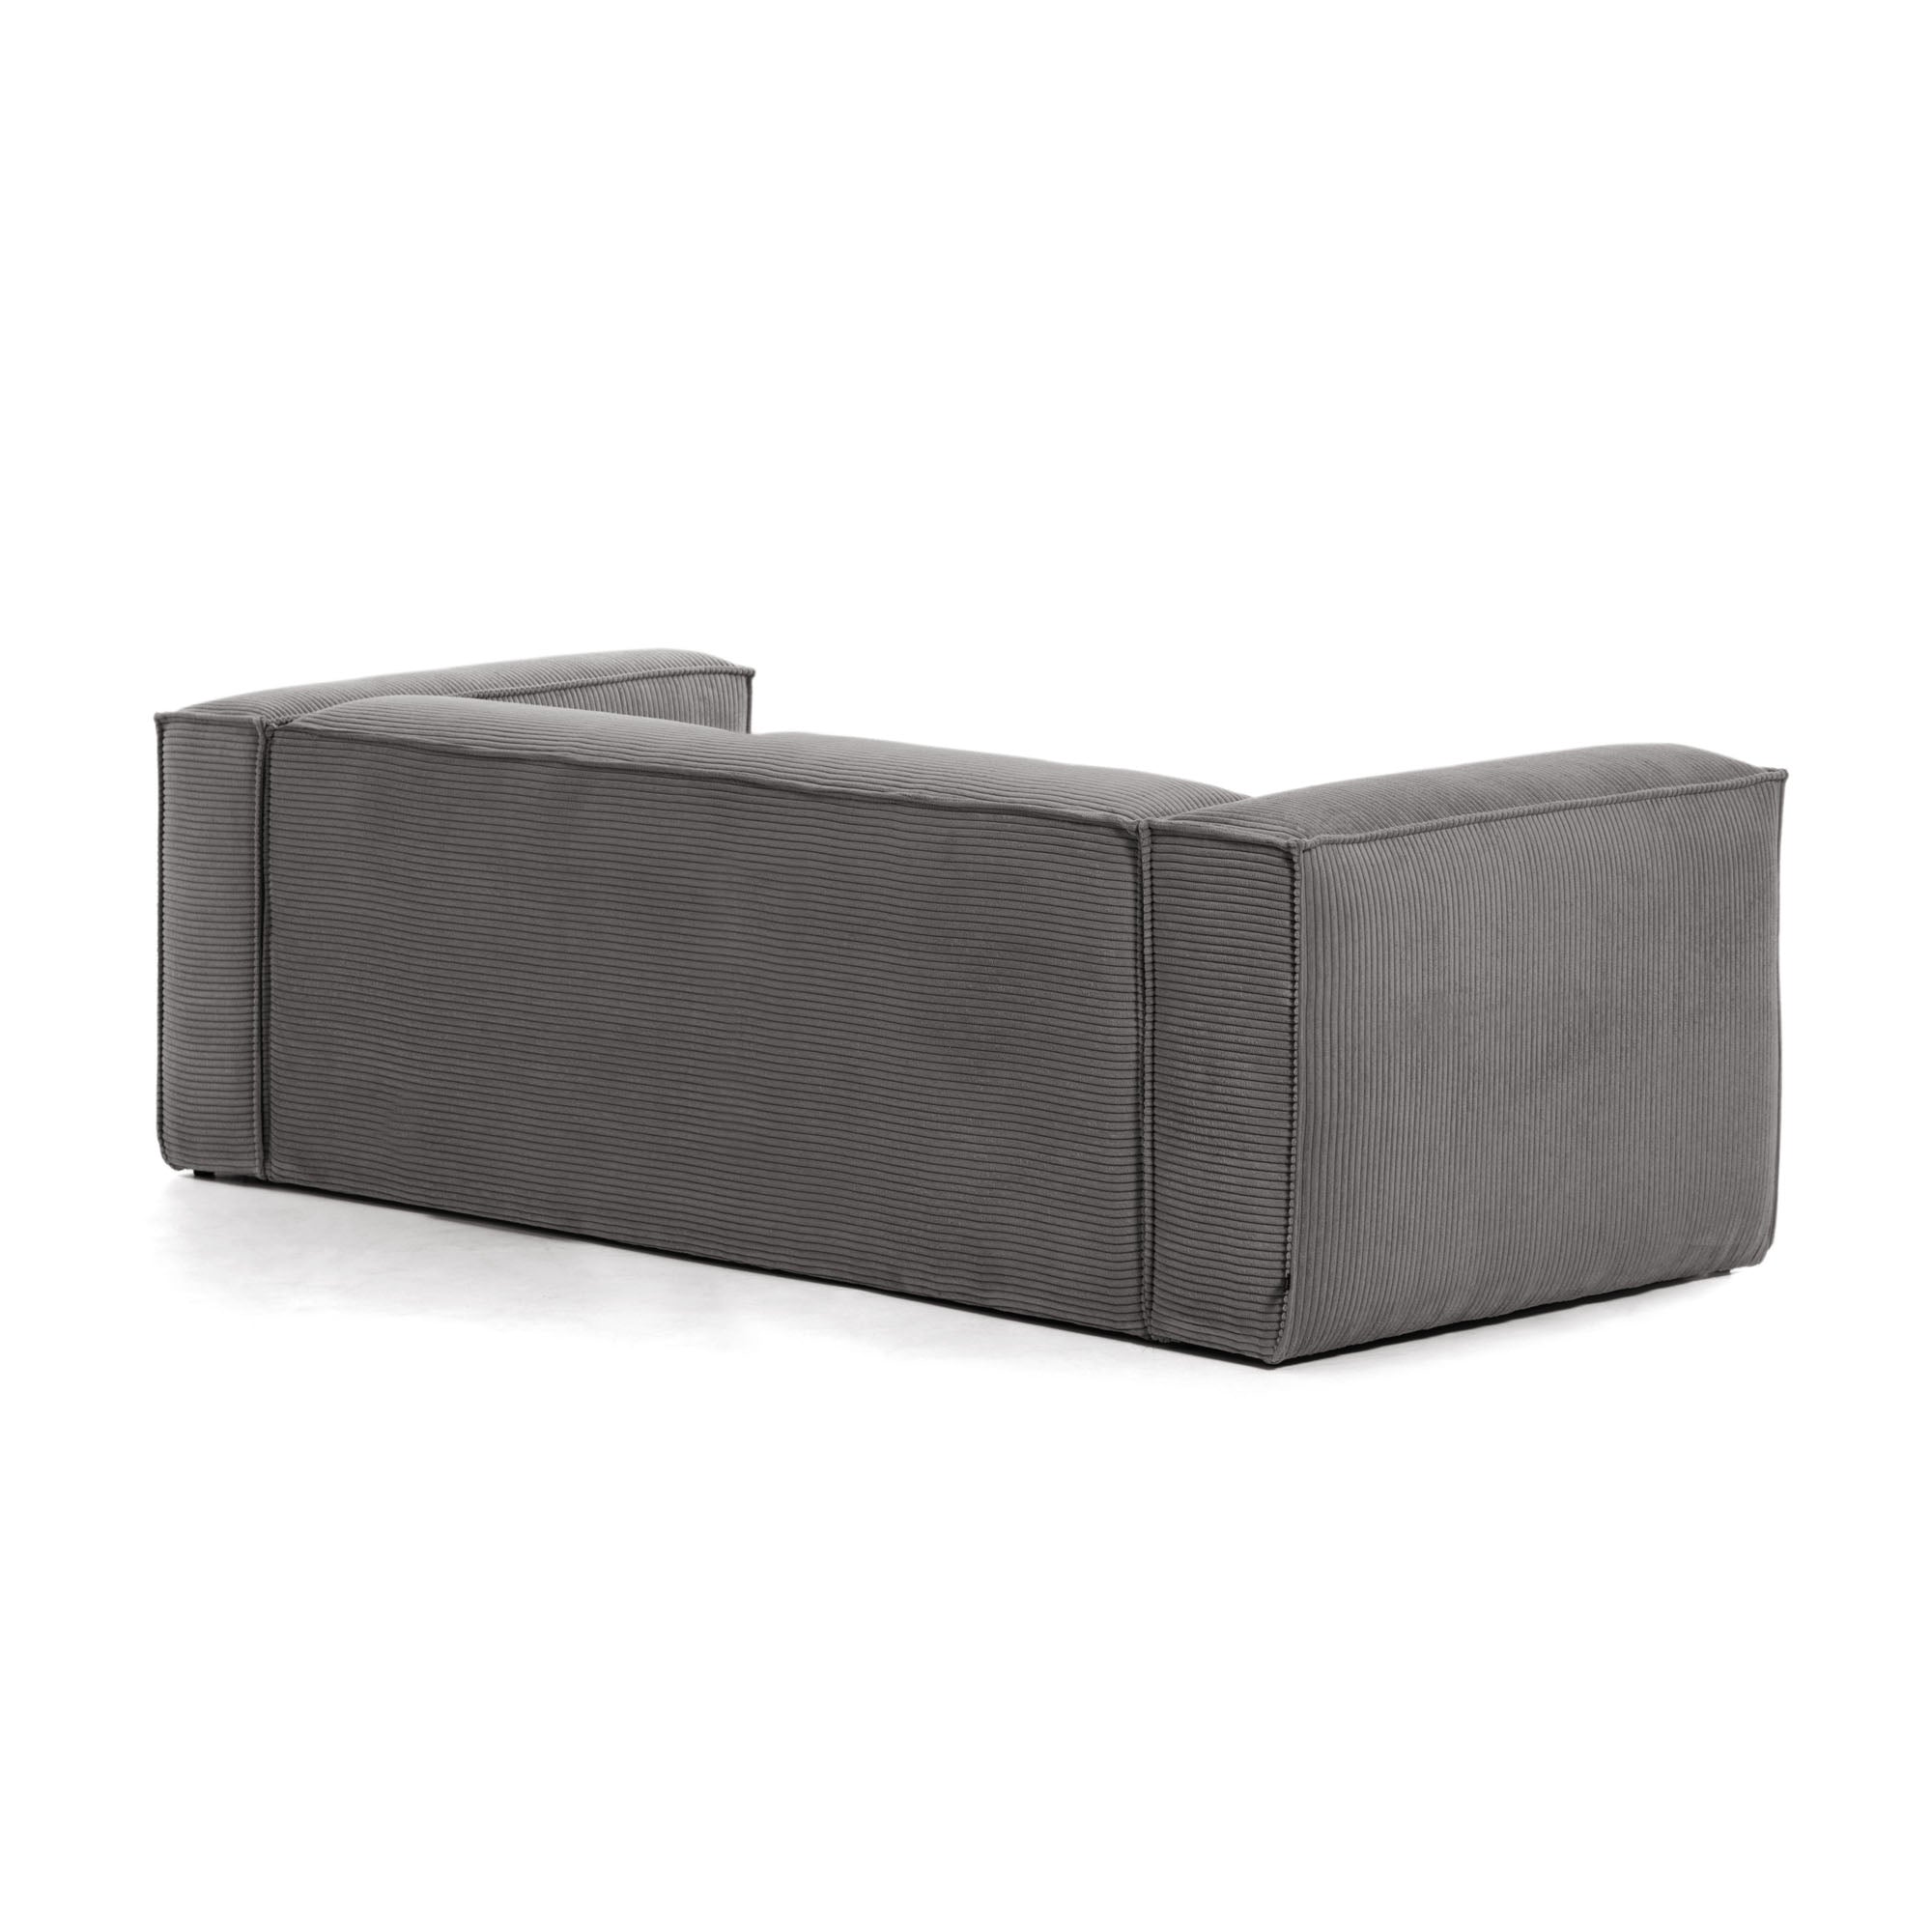 Blok 2 személyes kanapé szürke, széles varrású kordbársonyból, 210 cm